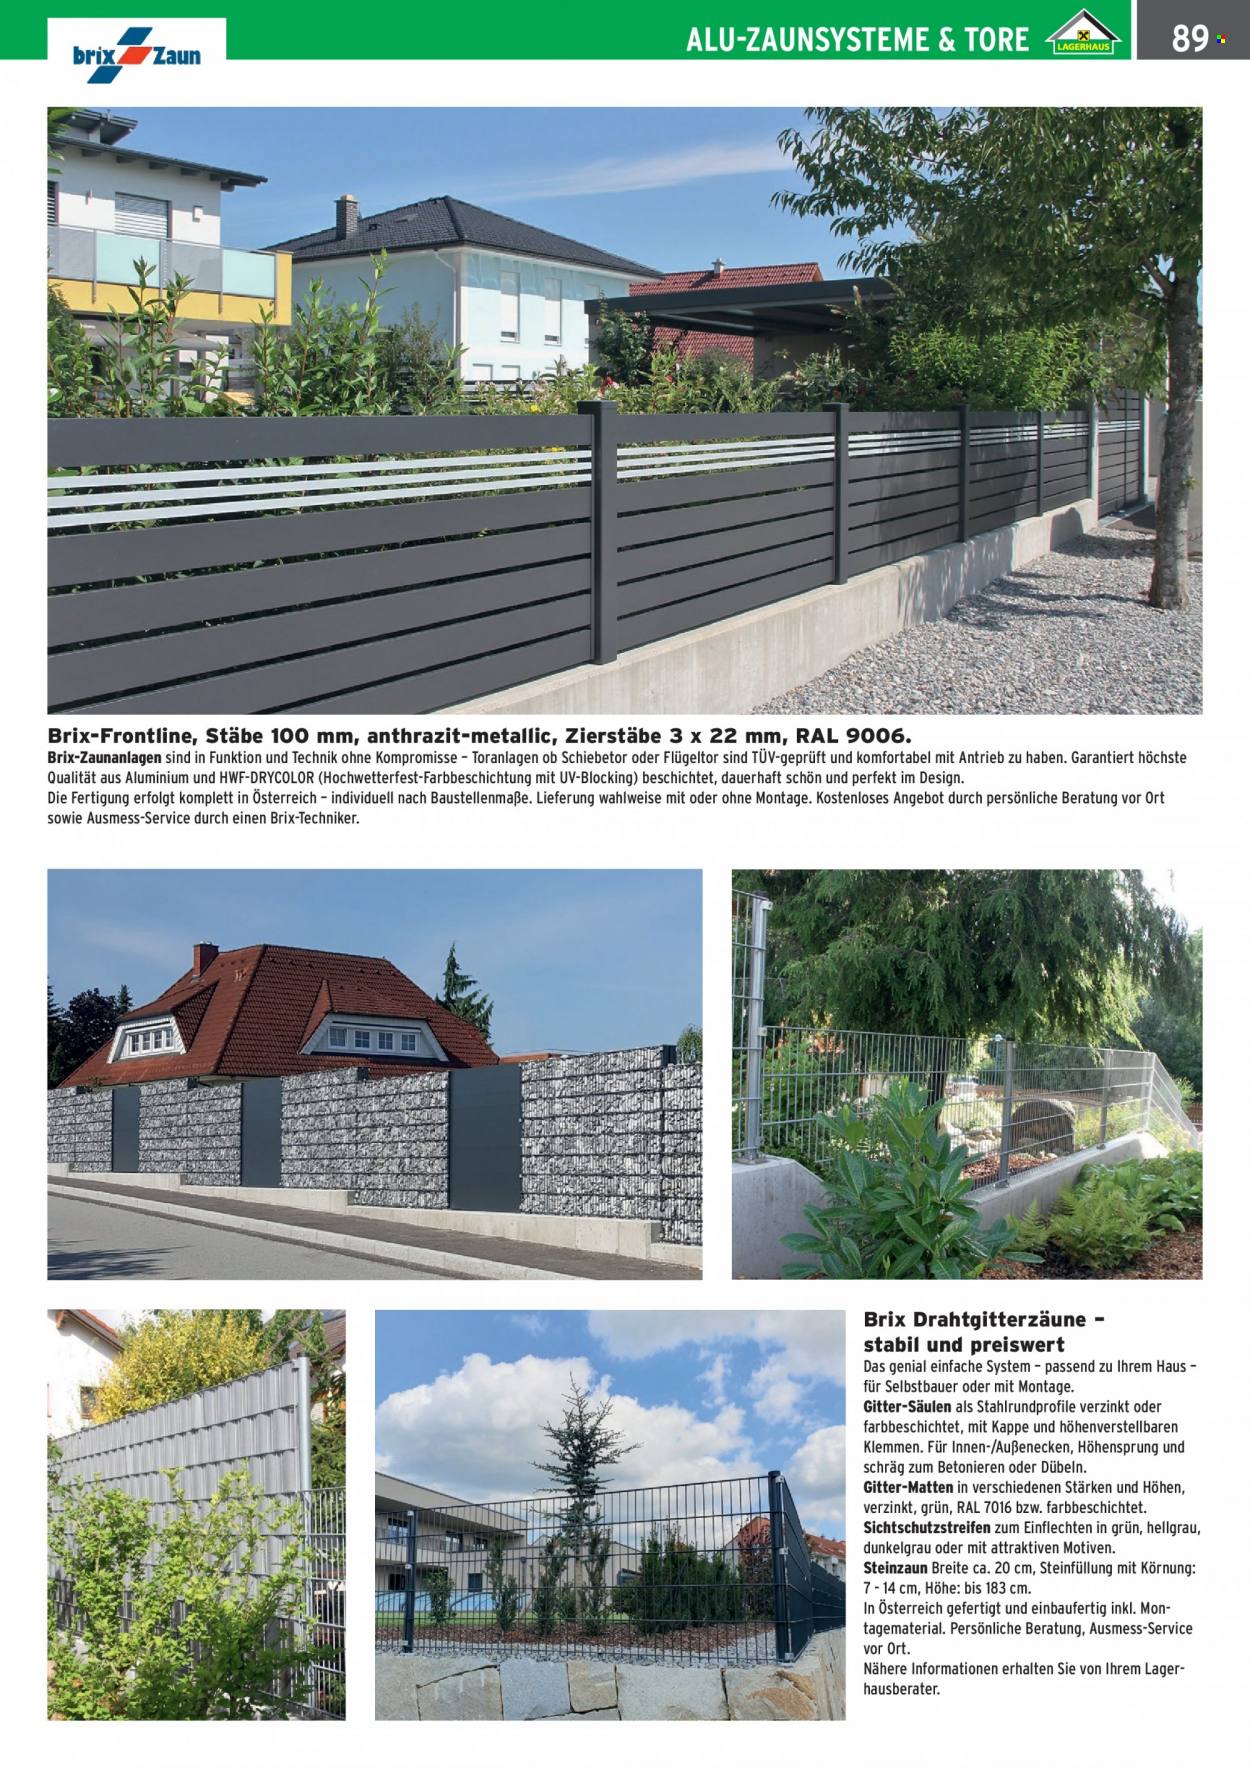 Angebote Salzburger Lagerhaus. Seite 91.